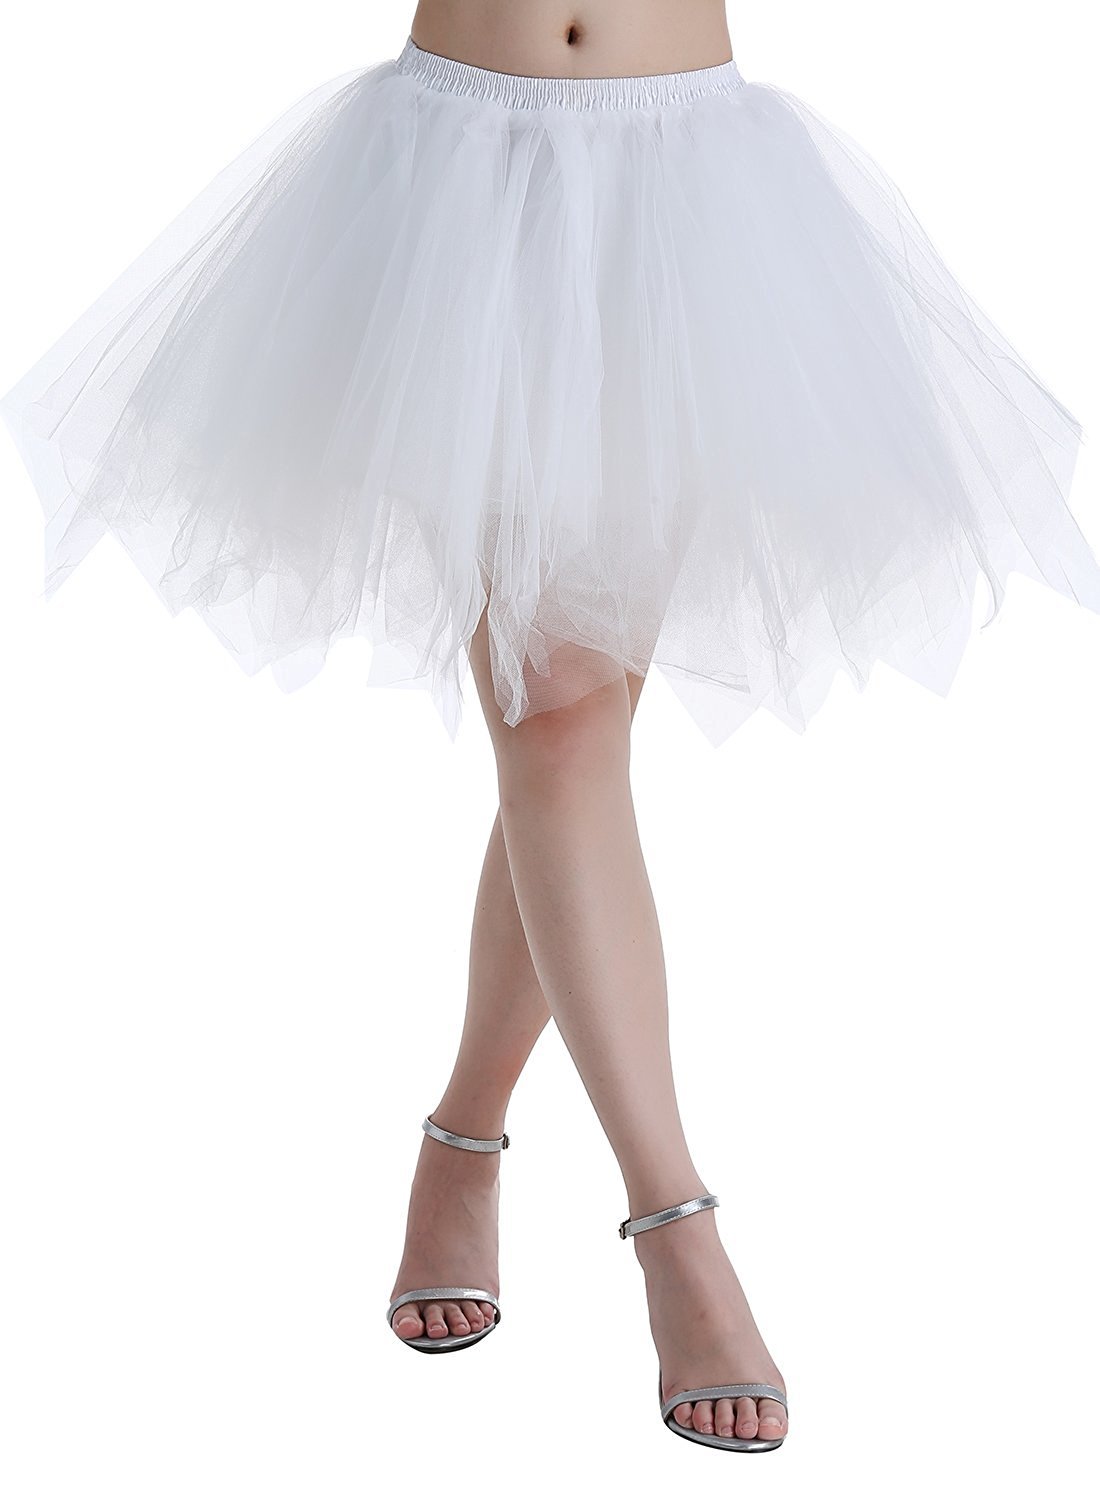 Karneval Erwachsene Damen 80's Tüllrock Tütü Röcke Tüll Petticoat Tutu Weiß